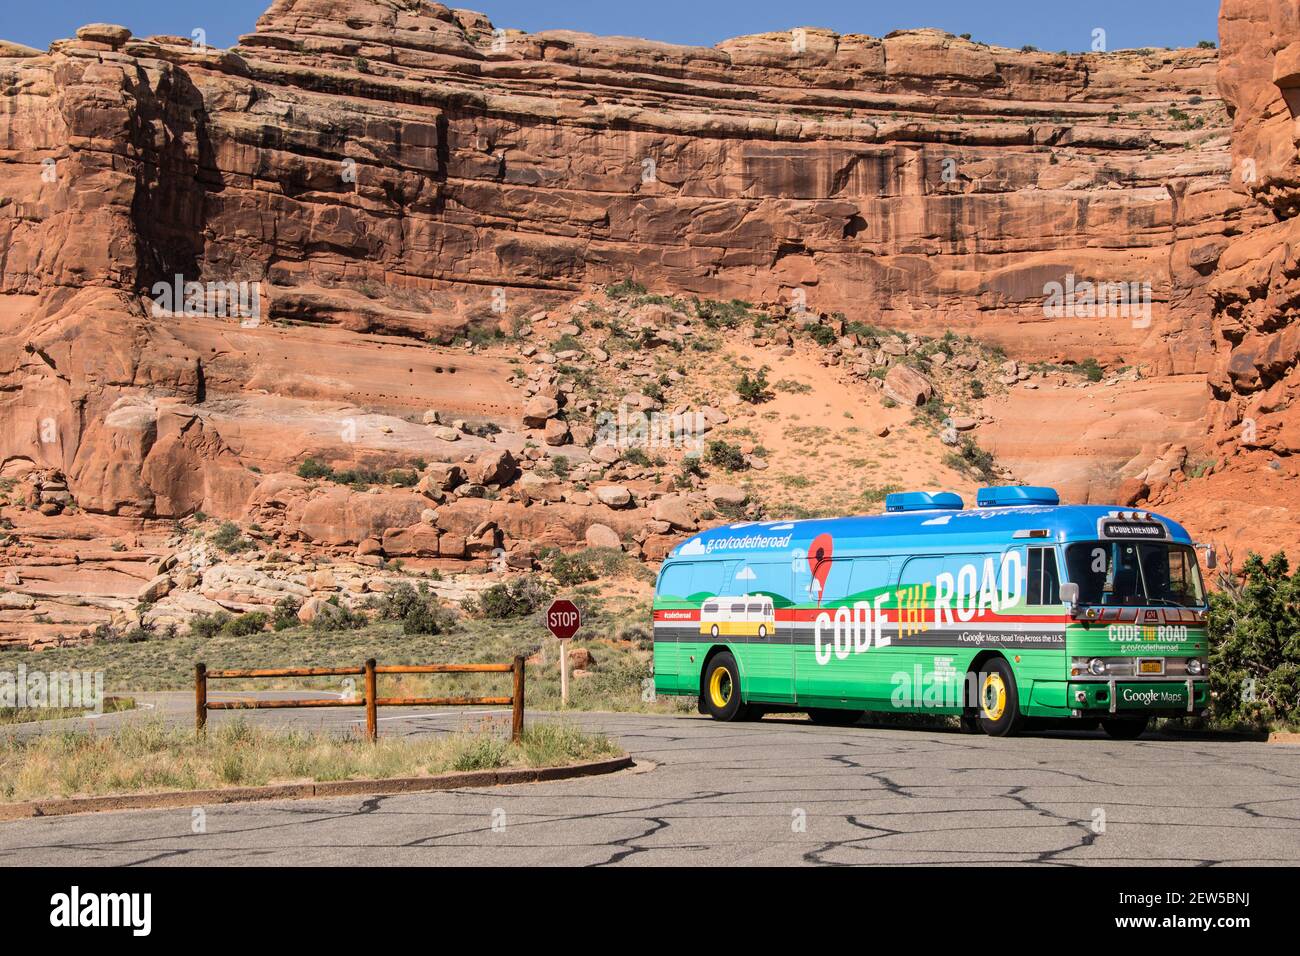 ARCHES NATIONAL PARK, UTAH, USA - 3 GIUGNO 2015: Google Code il bus stradale che visita gli Stati Uniti per la mappatura delle strade, parcheggiato nel Parco Nazionale Arches, Utah. Foto Stock